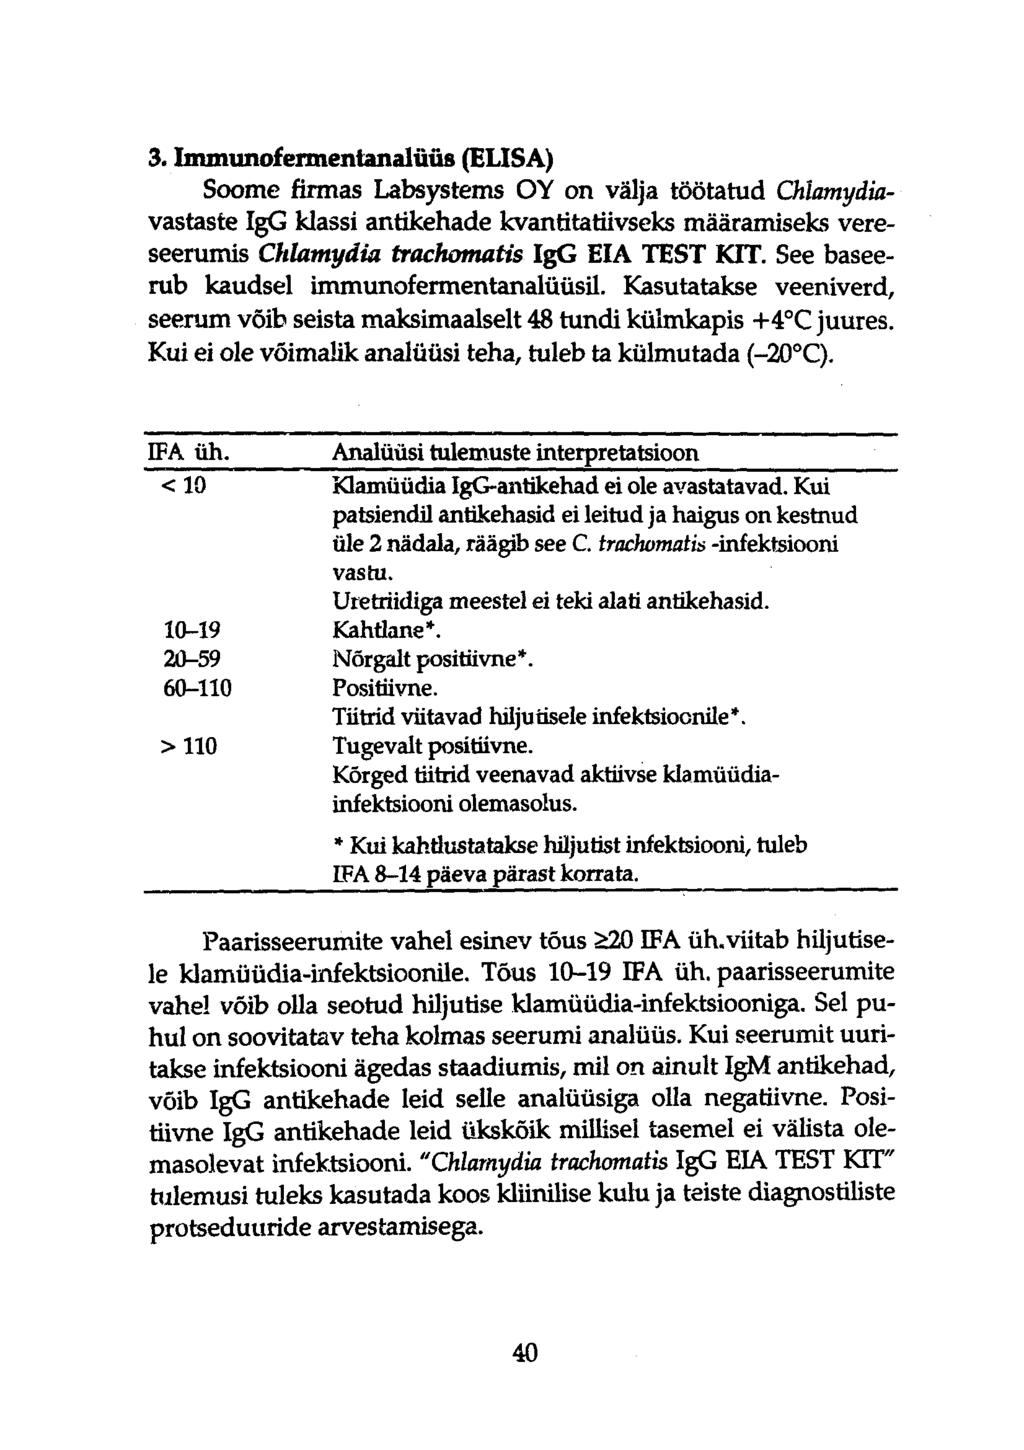 3. Immunofemientanalüüs (ELISA) Soome firmas Labsystems OY on välja töötatud Oilamydiavastaste IgG klassi antikehade kvantitatiivseks määramiseks vereseerumis Chlamydia trachomatis IgG EIÄ TEST KIT.